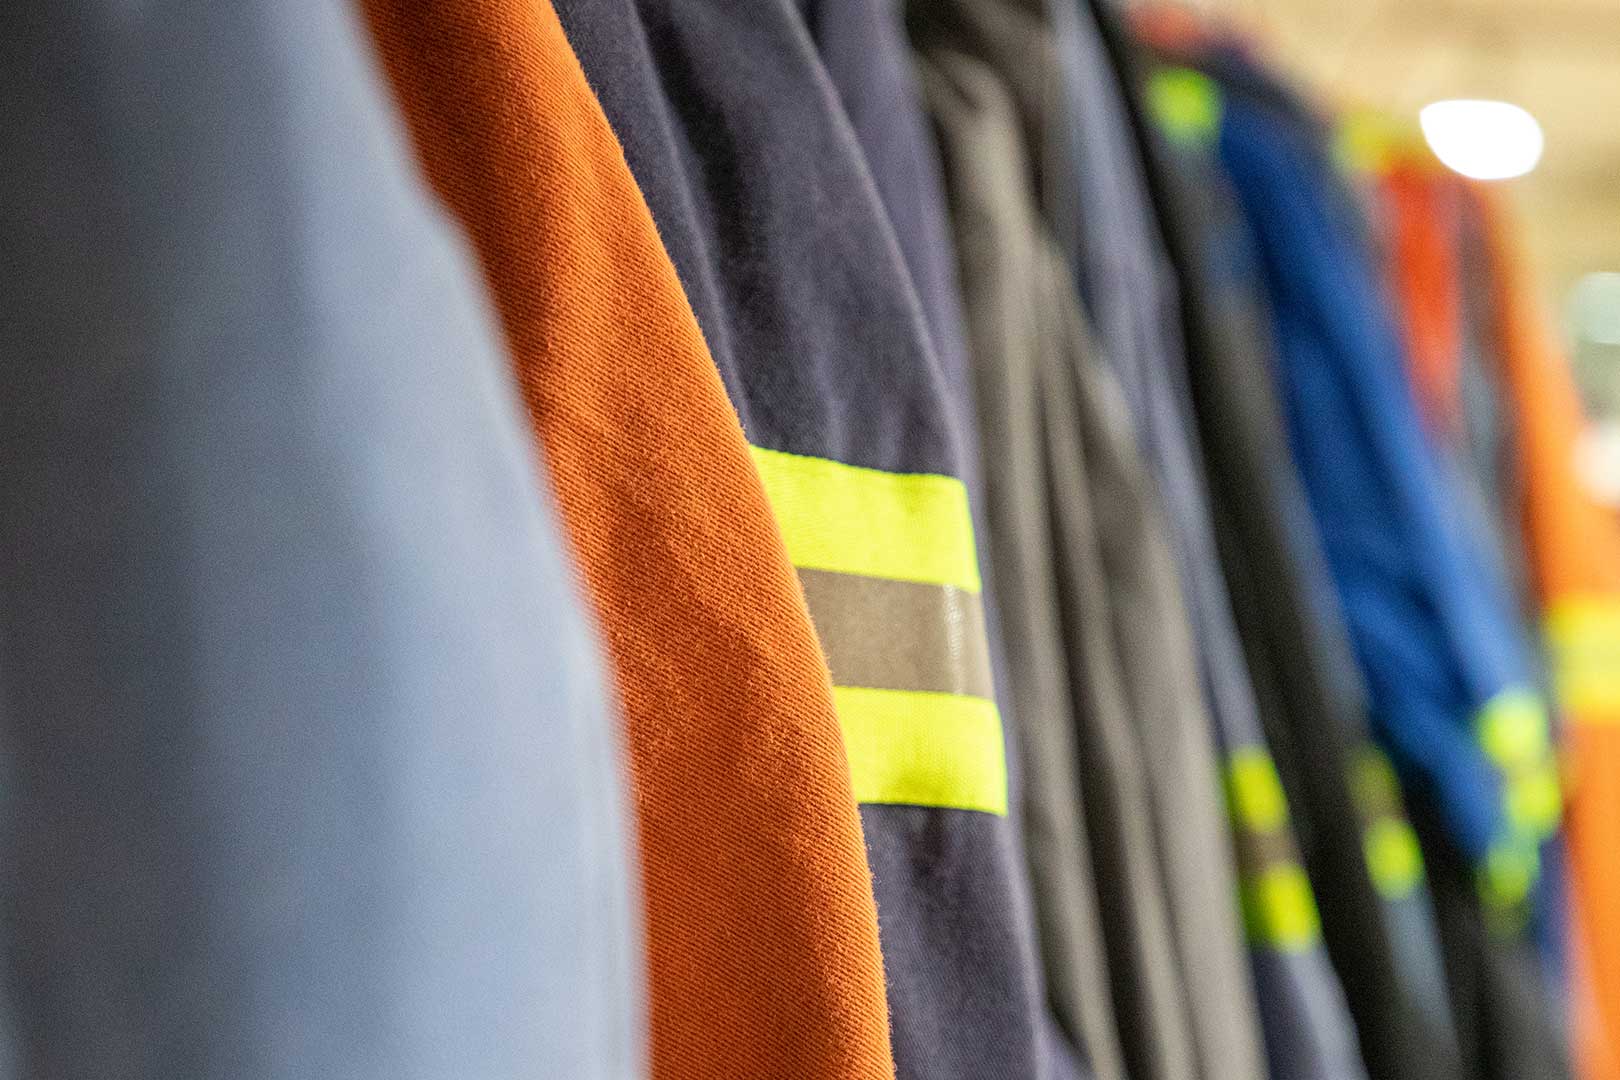 Flame resistant uniforms